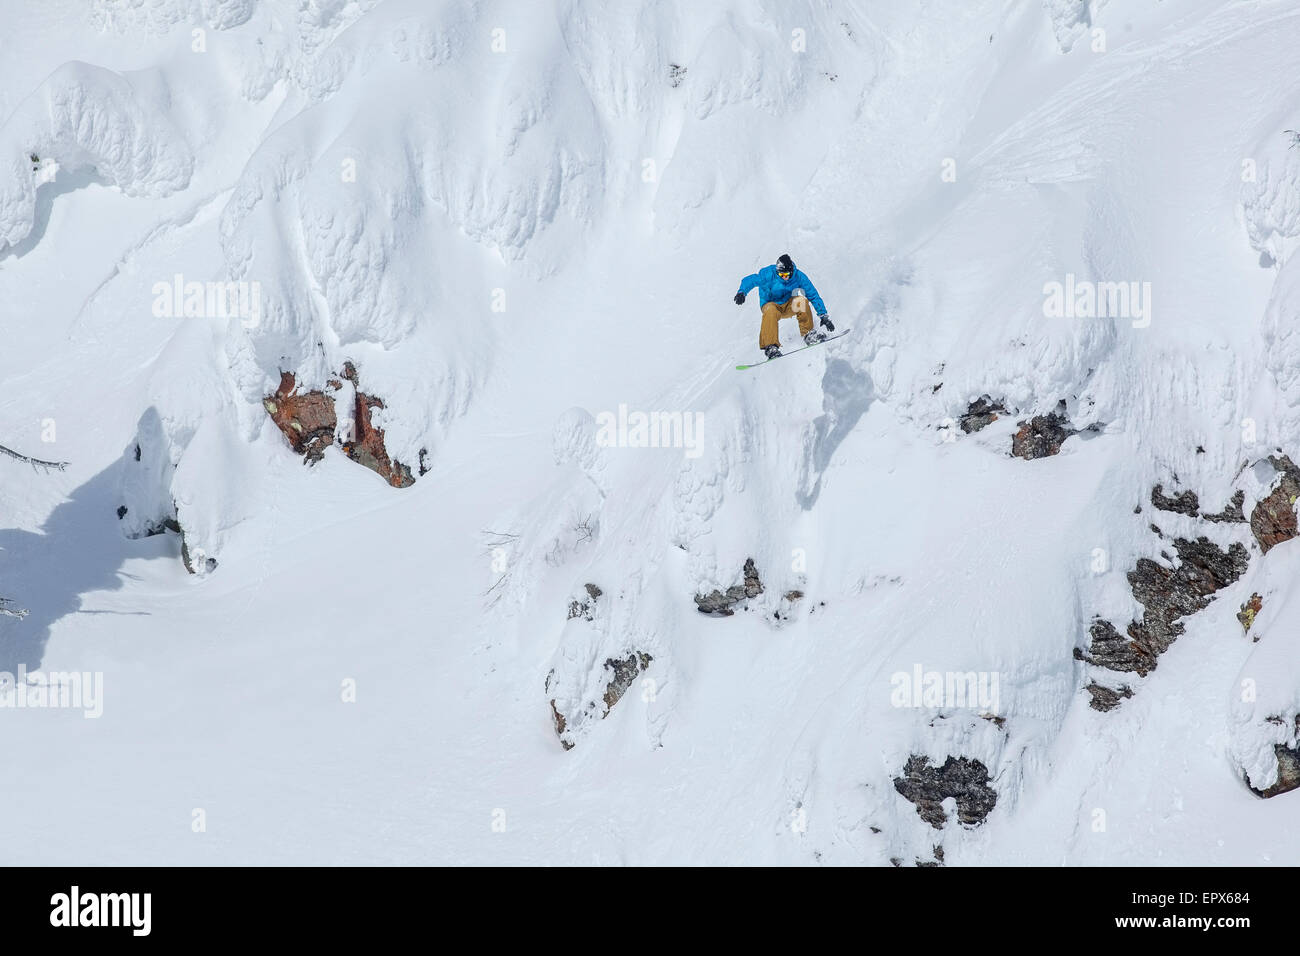 USA, Montana, Whitefish, Man snowboarding down mountain Stock Photo